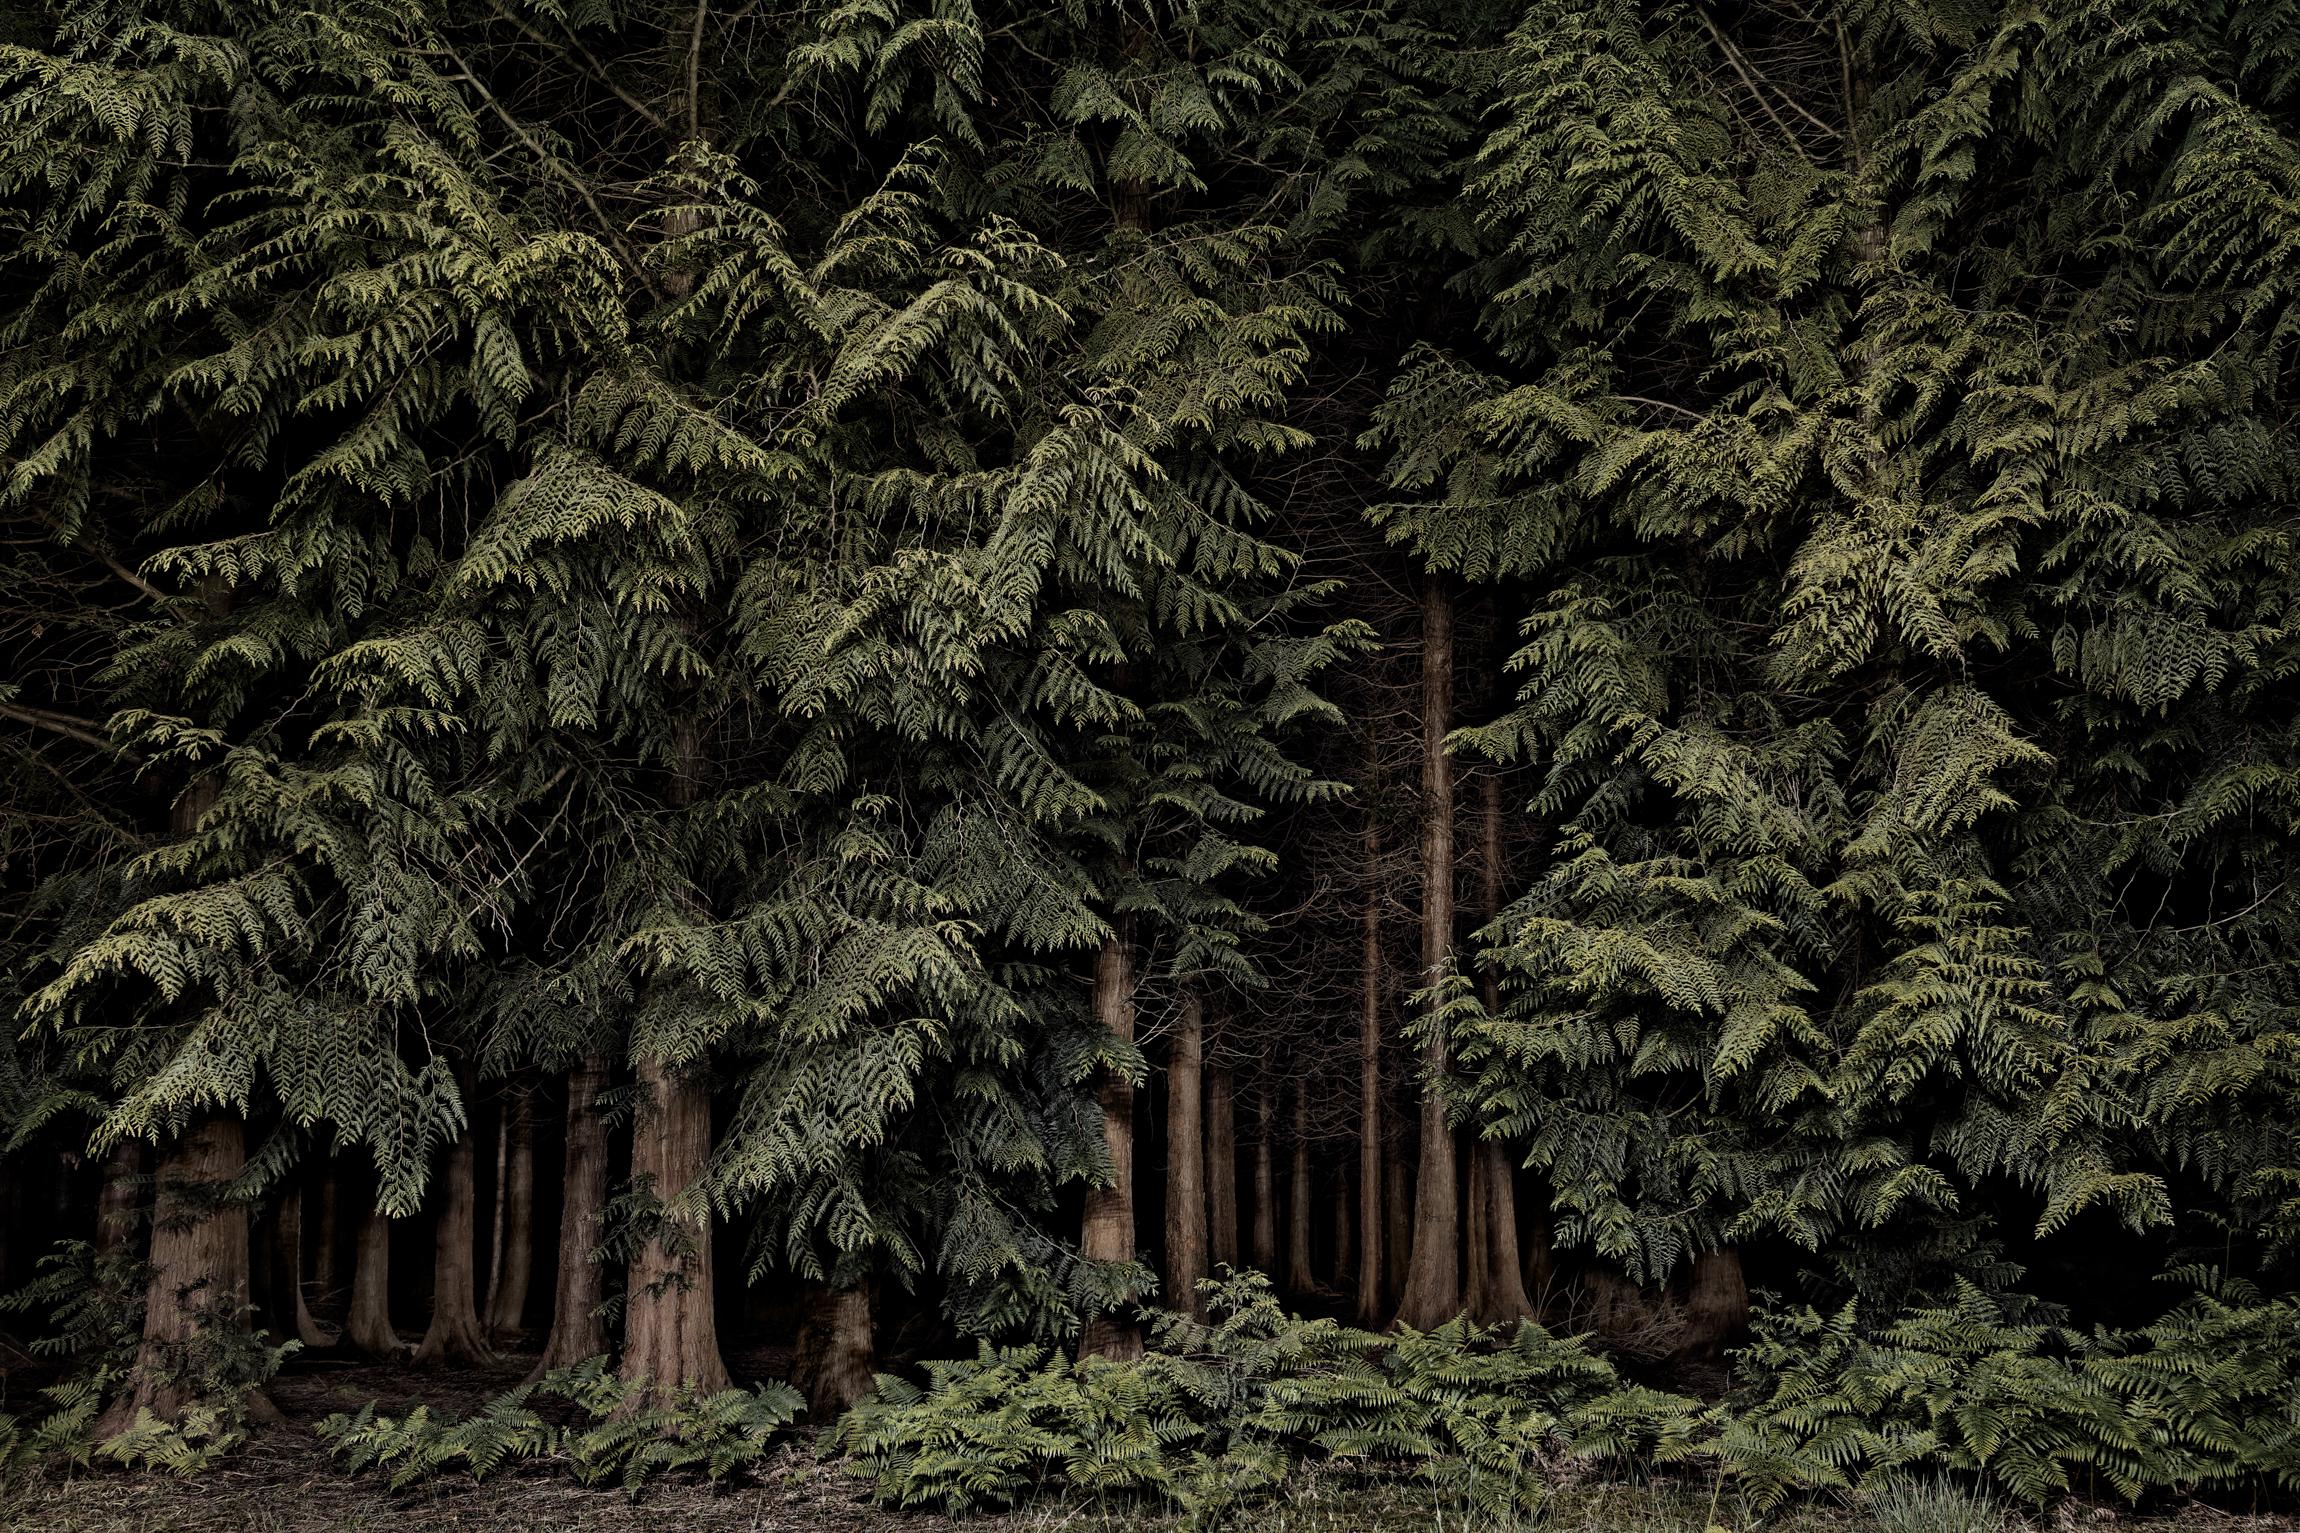 Jasper Goodall Landscape Photograph – Zedernholz, Twilight's Pat 001 – Wald bei Nacht...